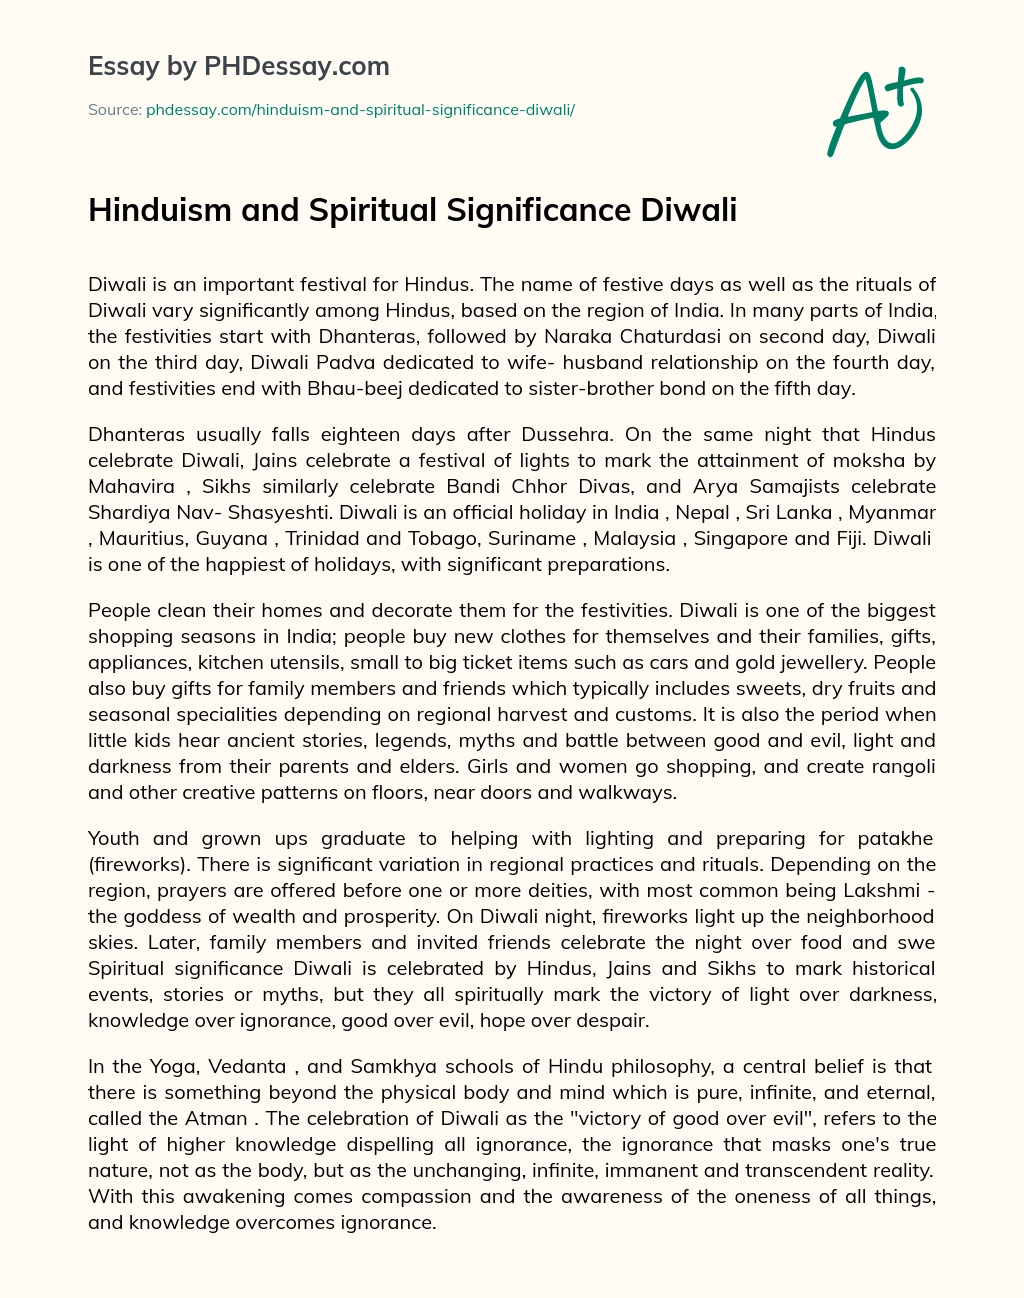 hinduism essay conclusion